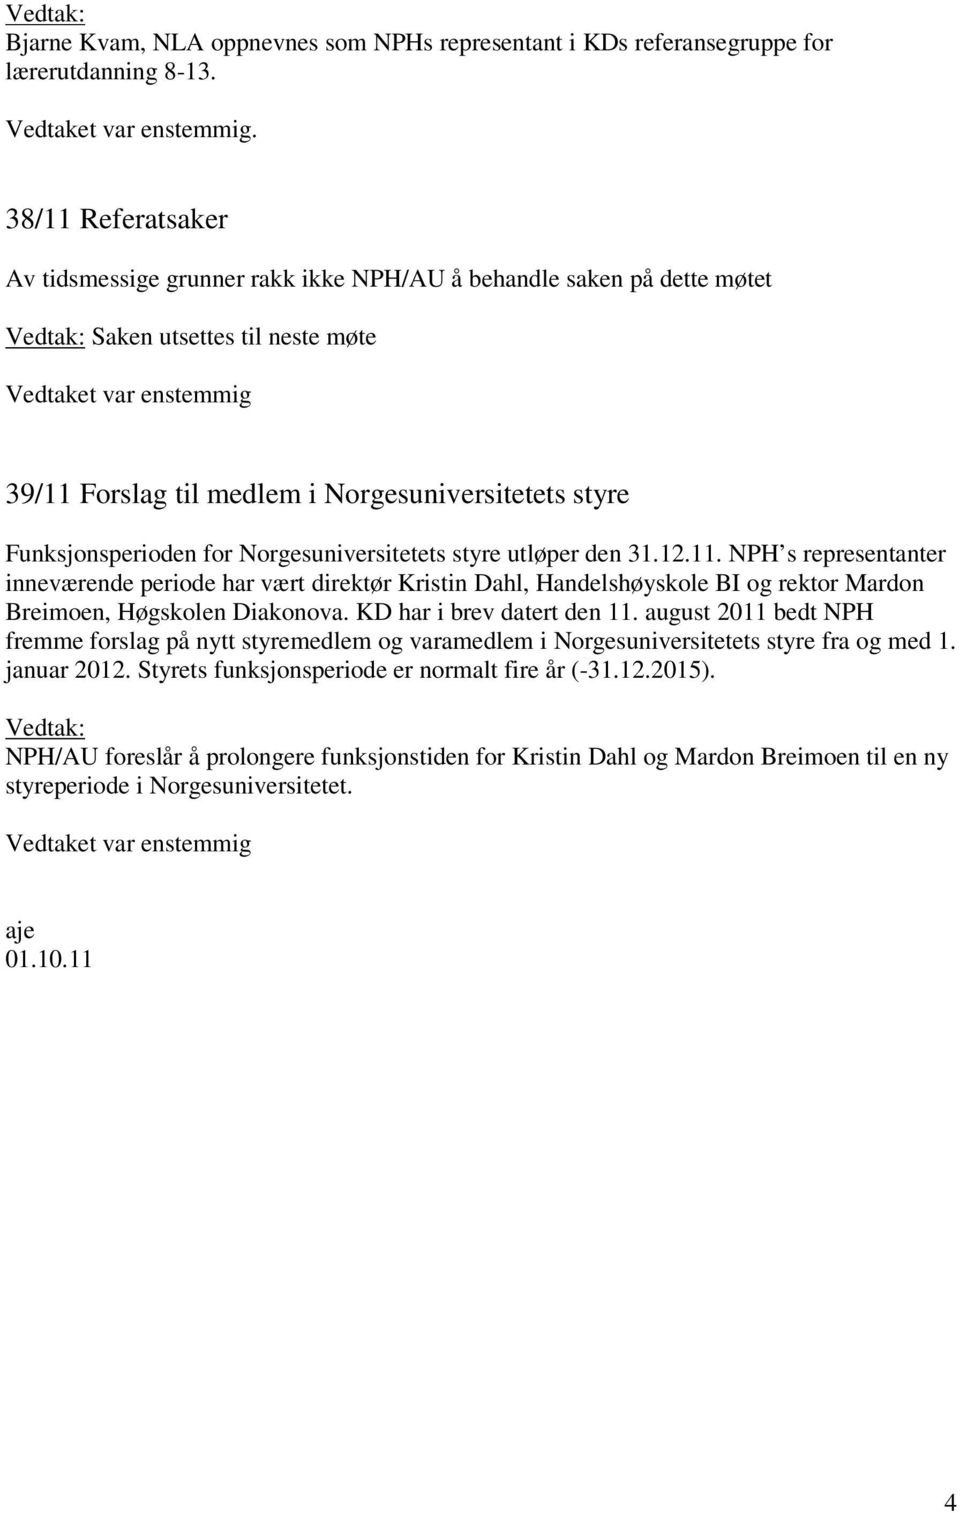 KD har i brev datert den 11. august 2011 bedt NPH fremme forslag på nytt styremedlem og varamedlem i Norgesuniversitetets styre fra og med 1. januar 2012.